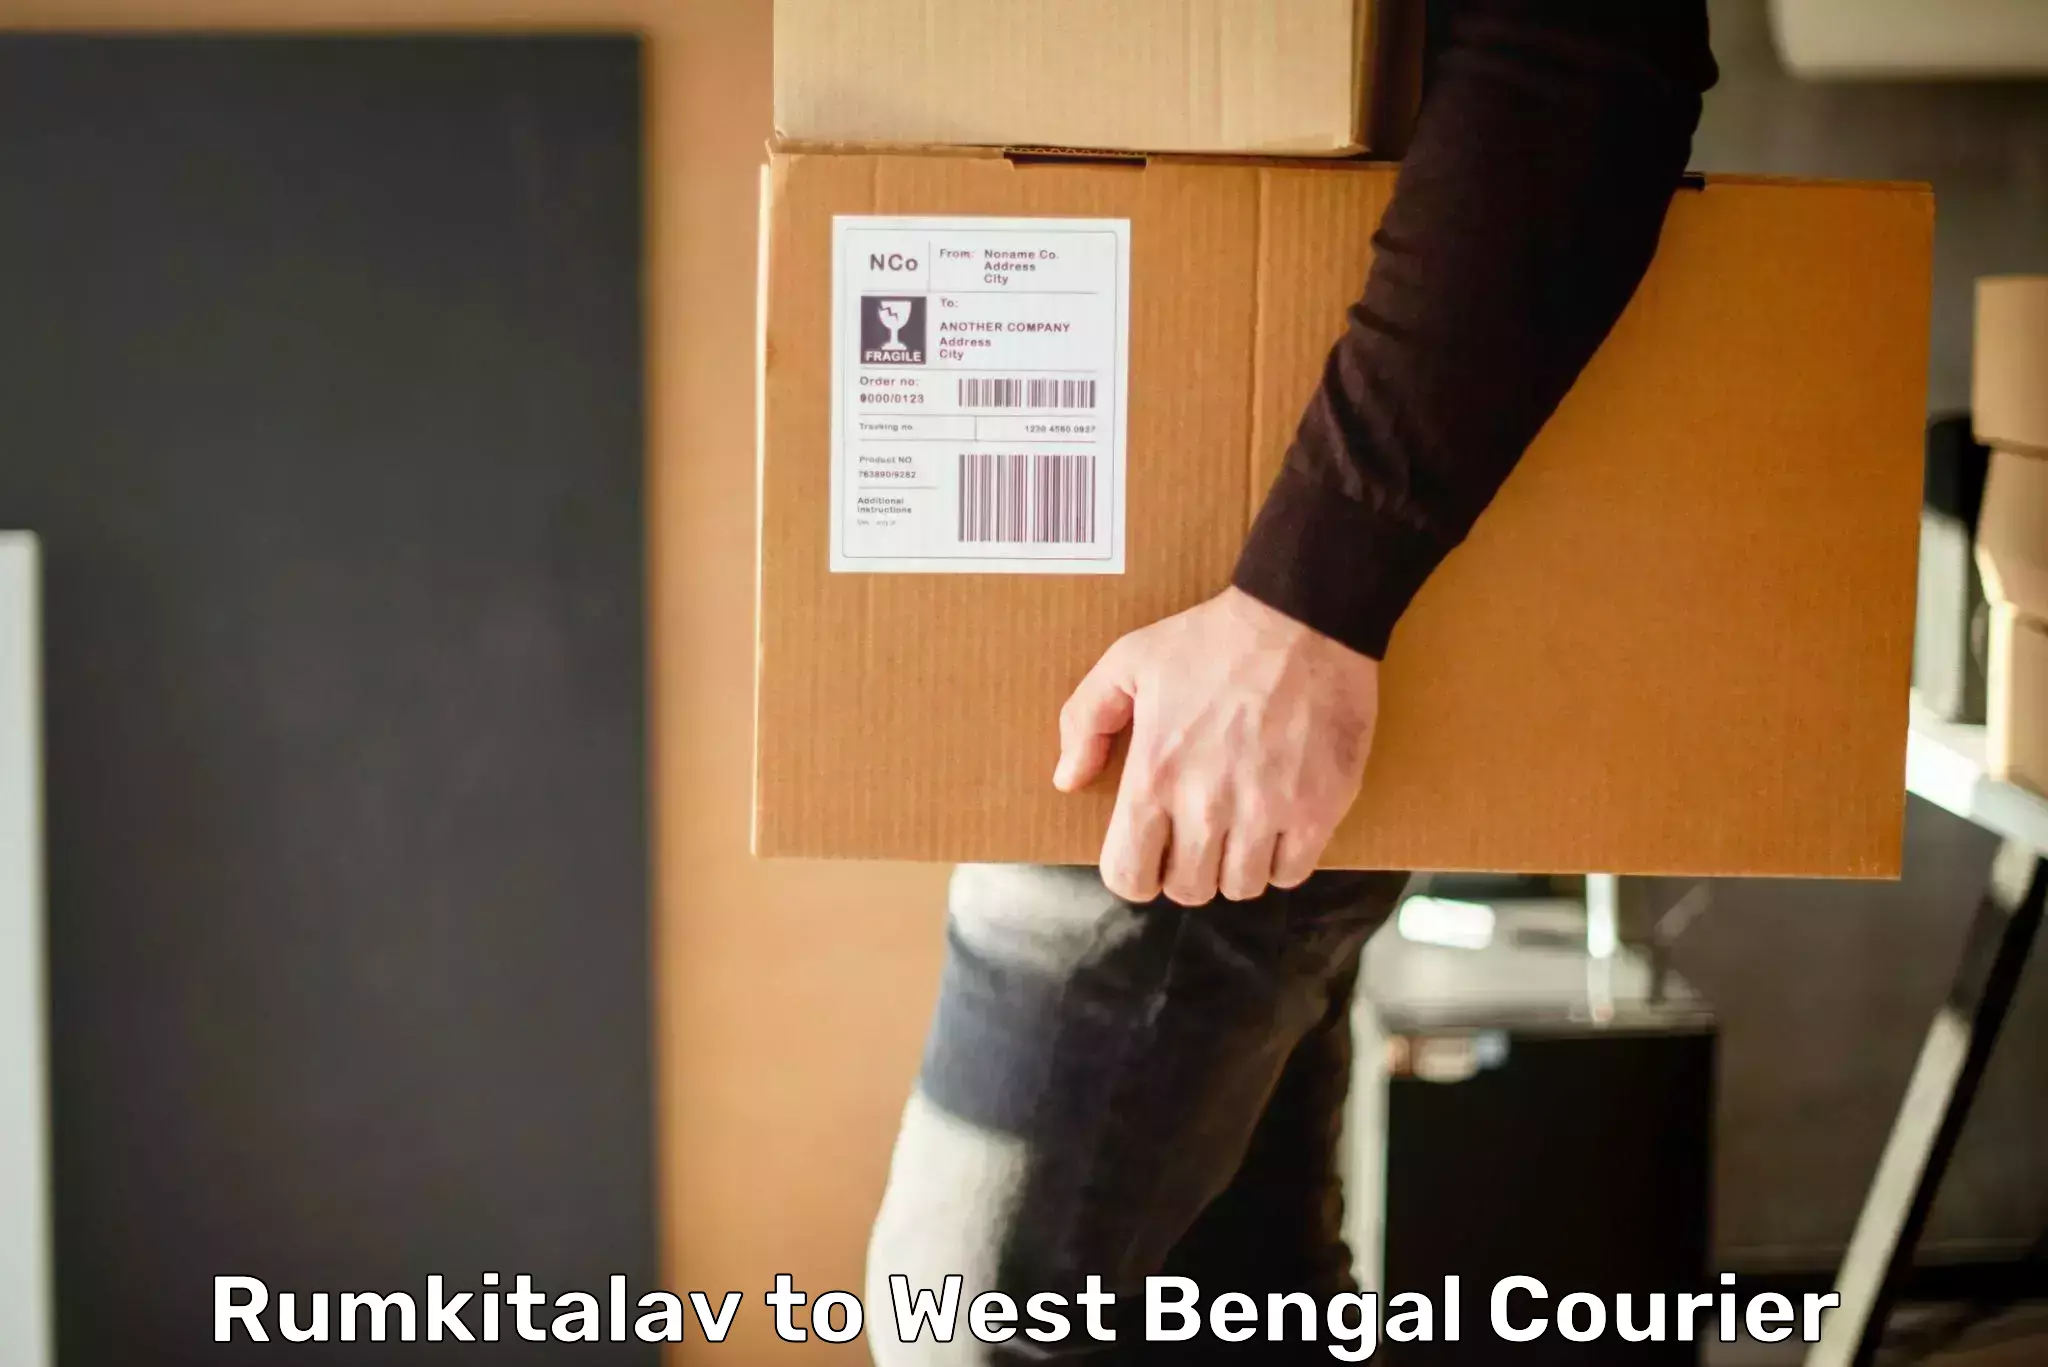 Cross-border shipping Rumkitalav to Kolkata Port